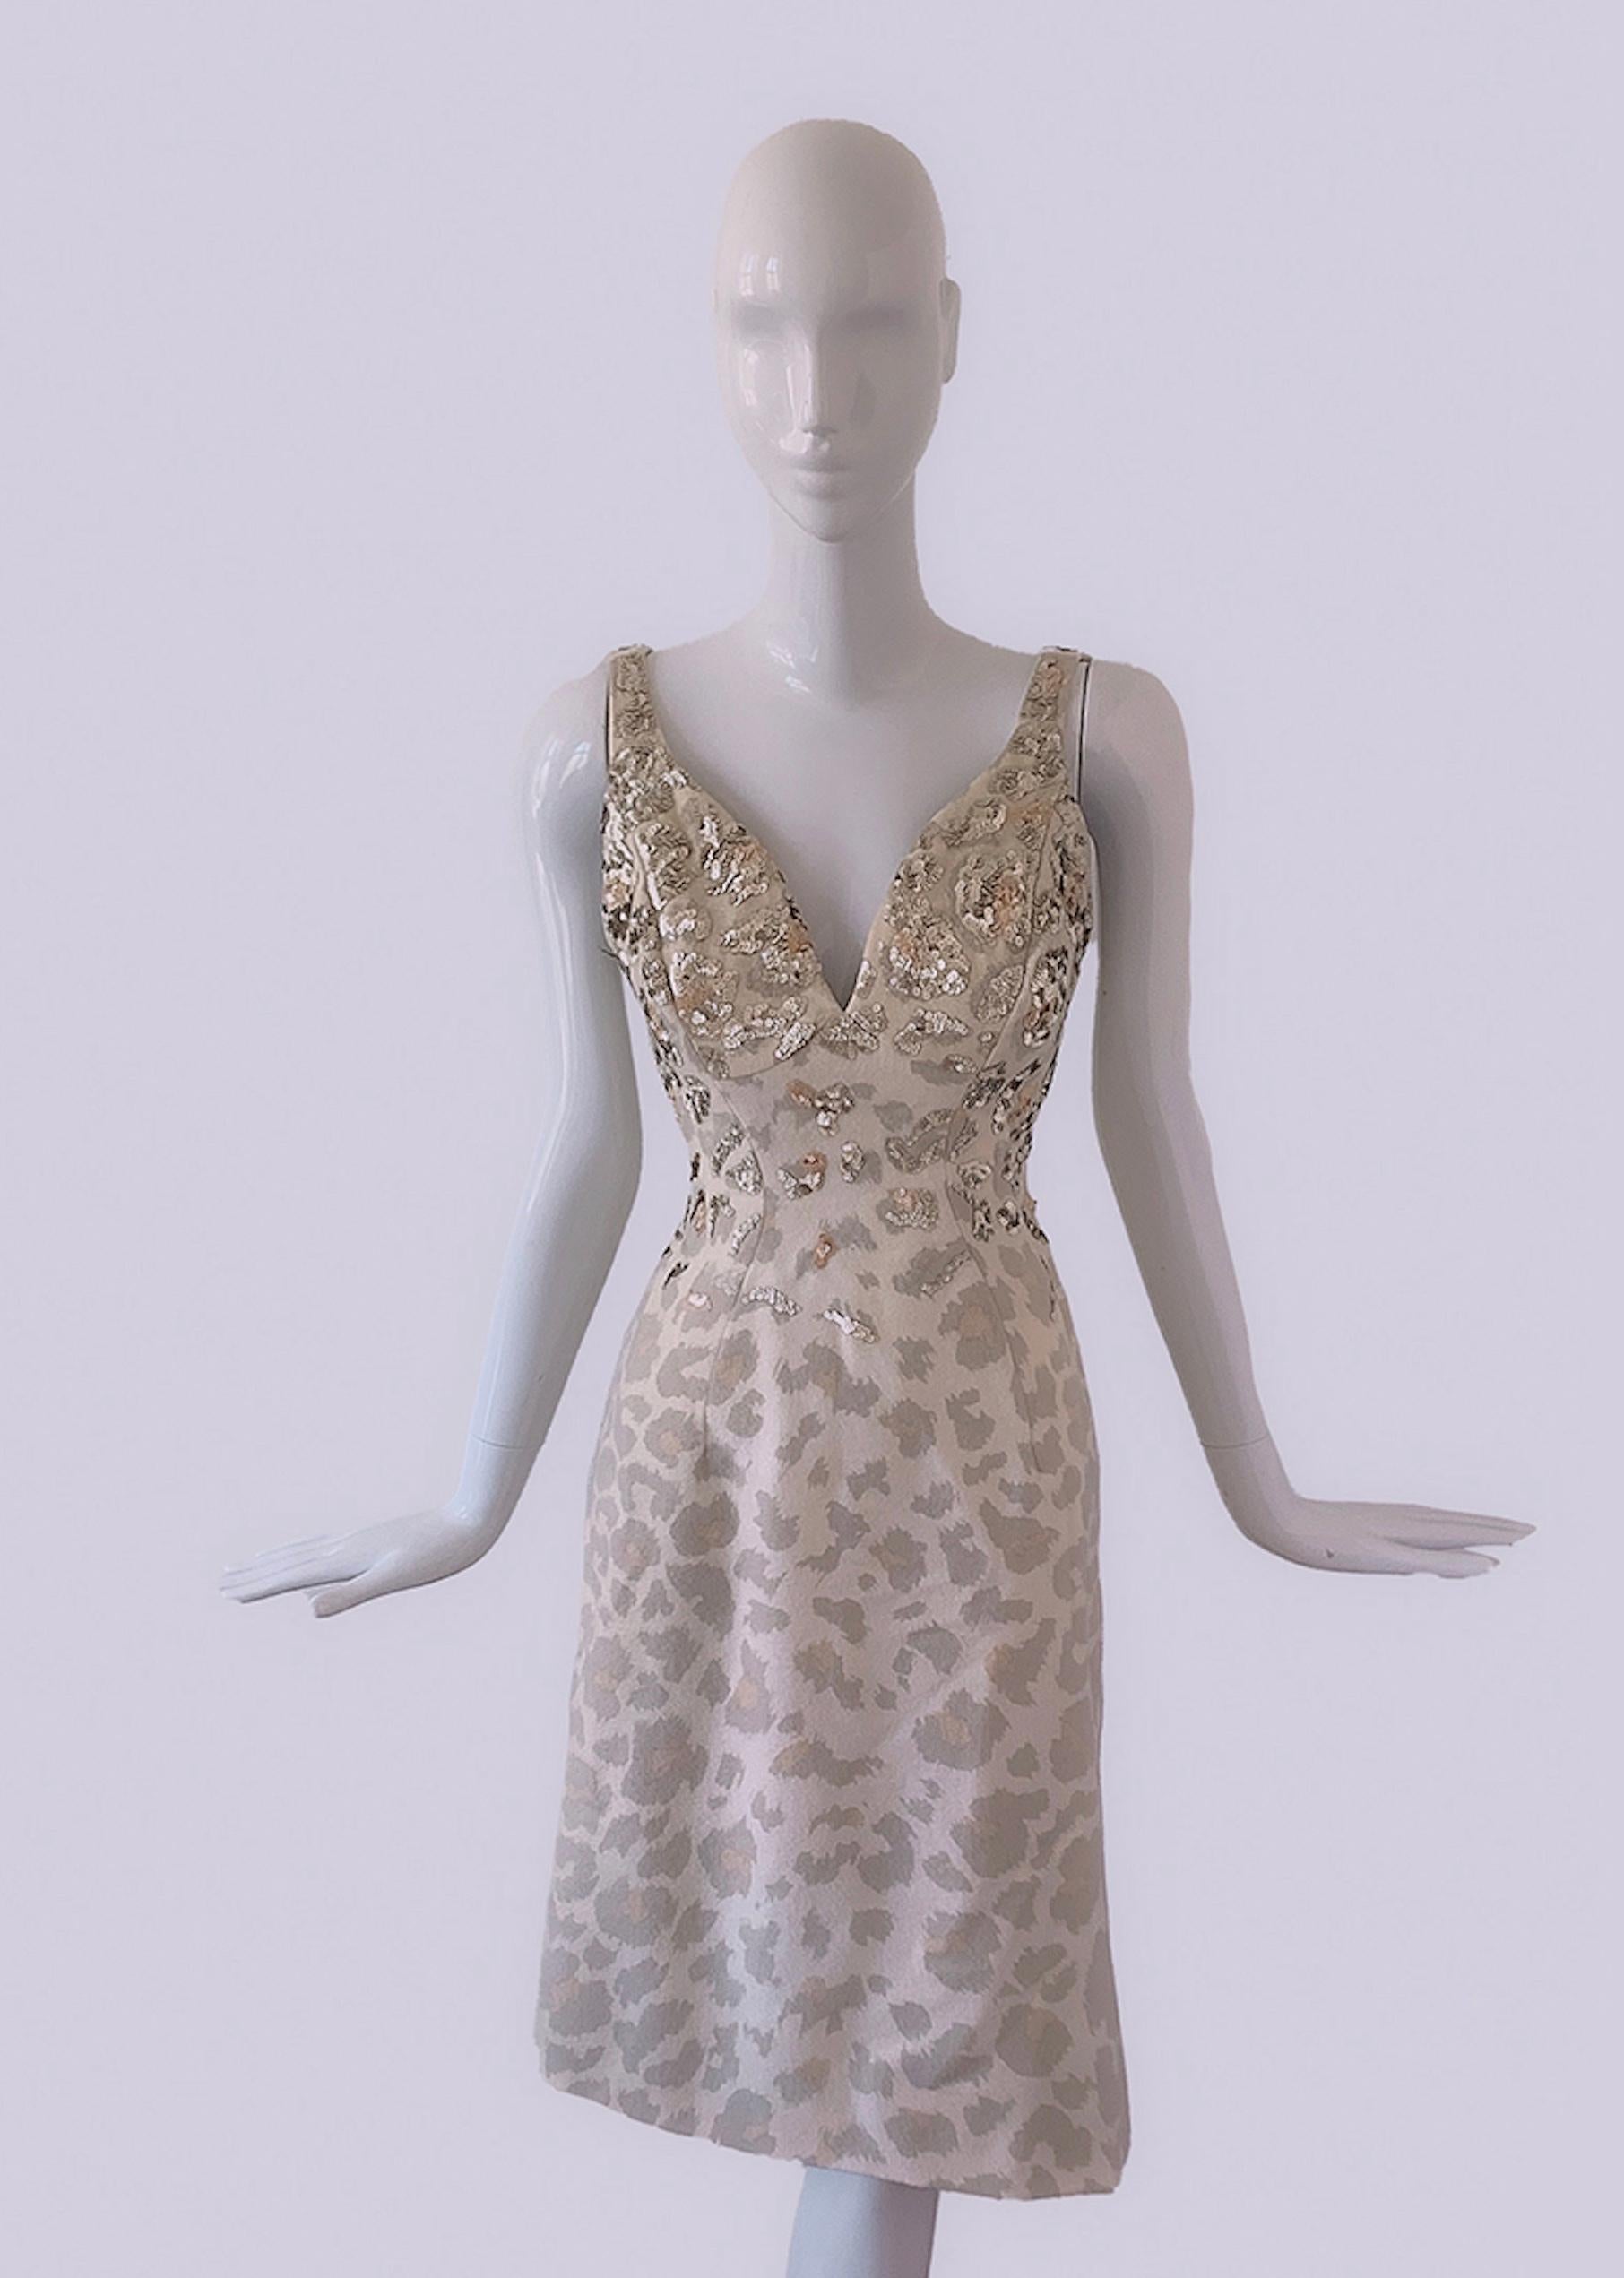 
STUNNING ikonischen Thierry Mugler Couture Kleid aus der 2001 FW Collection'S. Äußerst seltene dokumentierte Runway Gown .

Abstraktes Kleid mit Leo-Print-Muster, das mit den schönsten Glitzerpailletten von Hand verziert ist. Dieser Look ist so